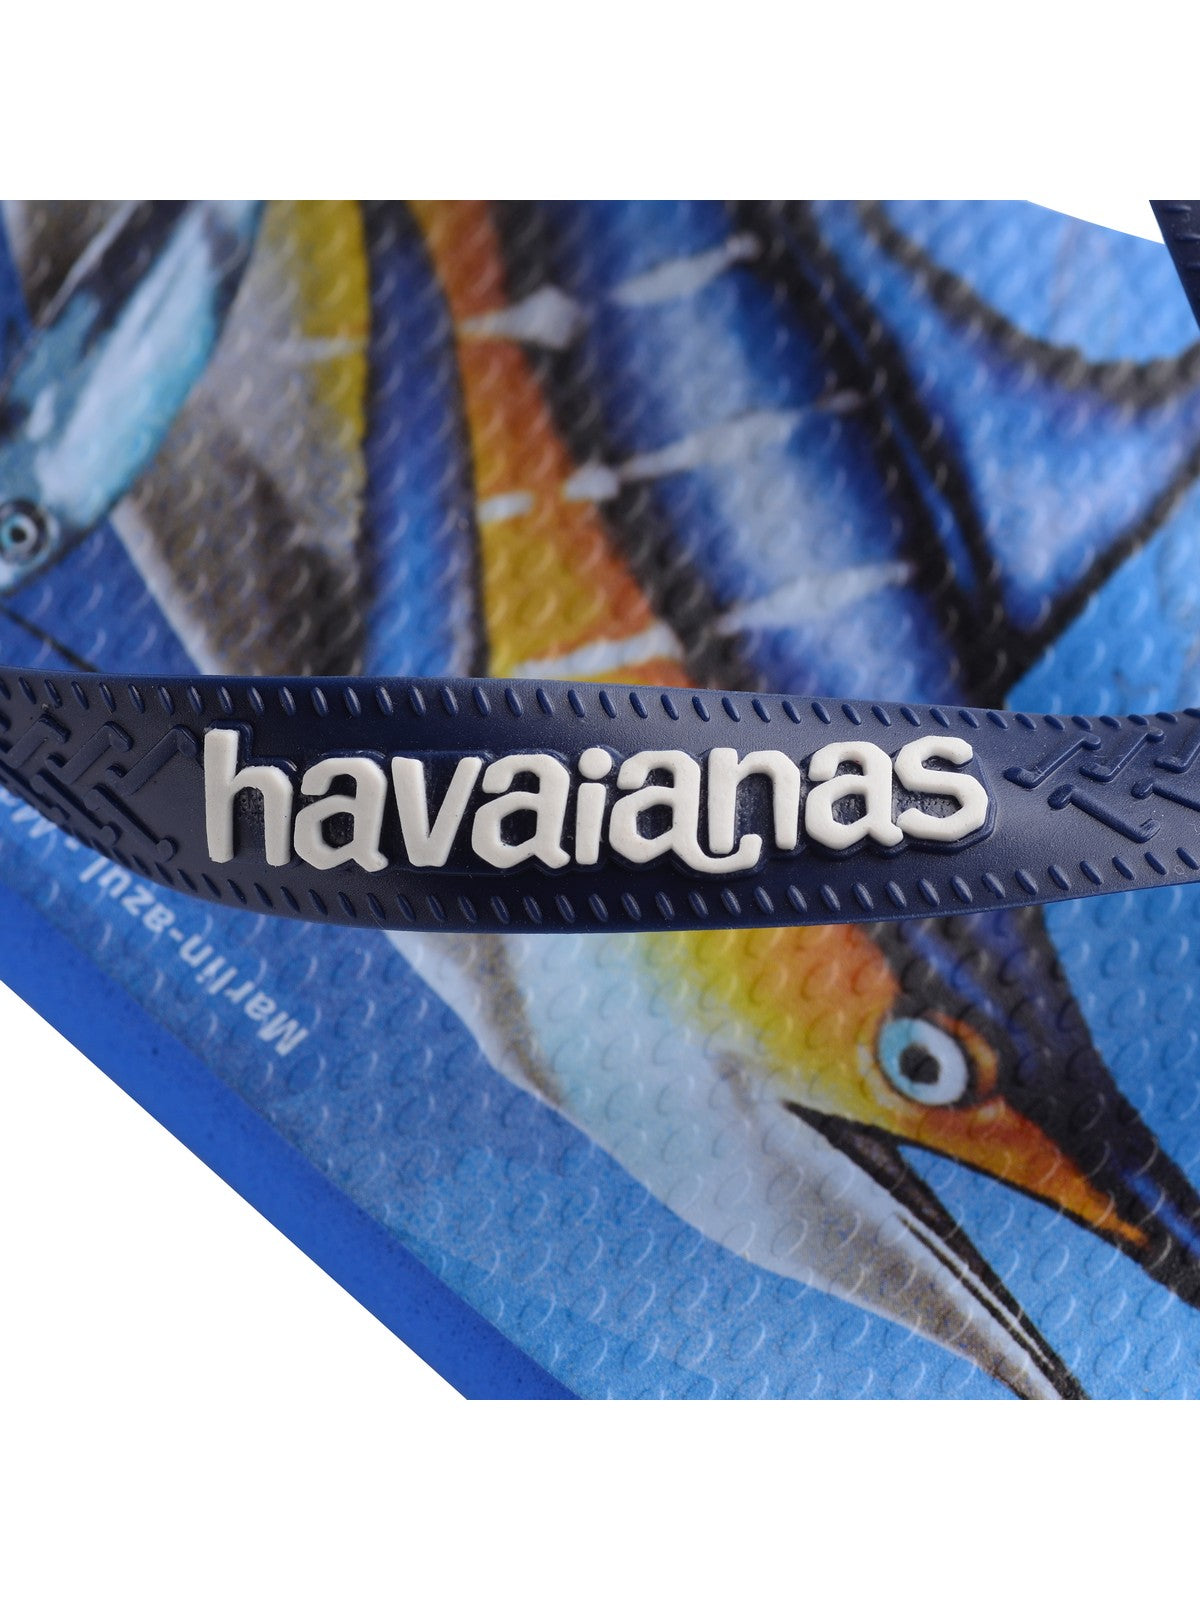 HAVAIANAS Tongs unisexes pour adultes Hav. conservation international 4119507.3847 Bleu